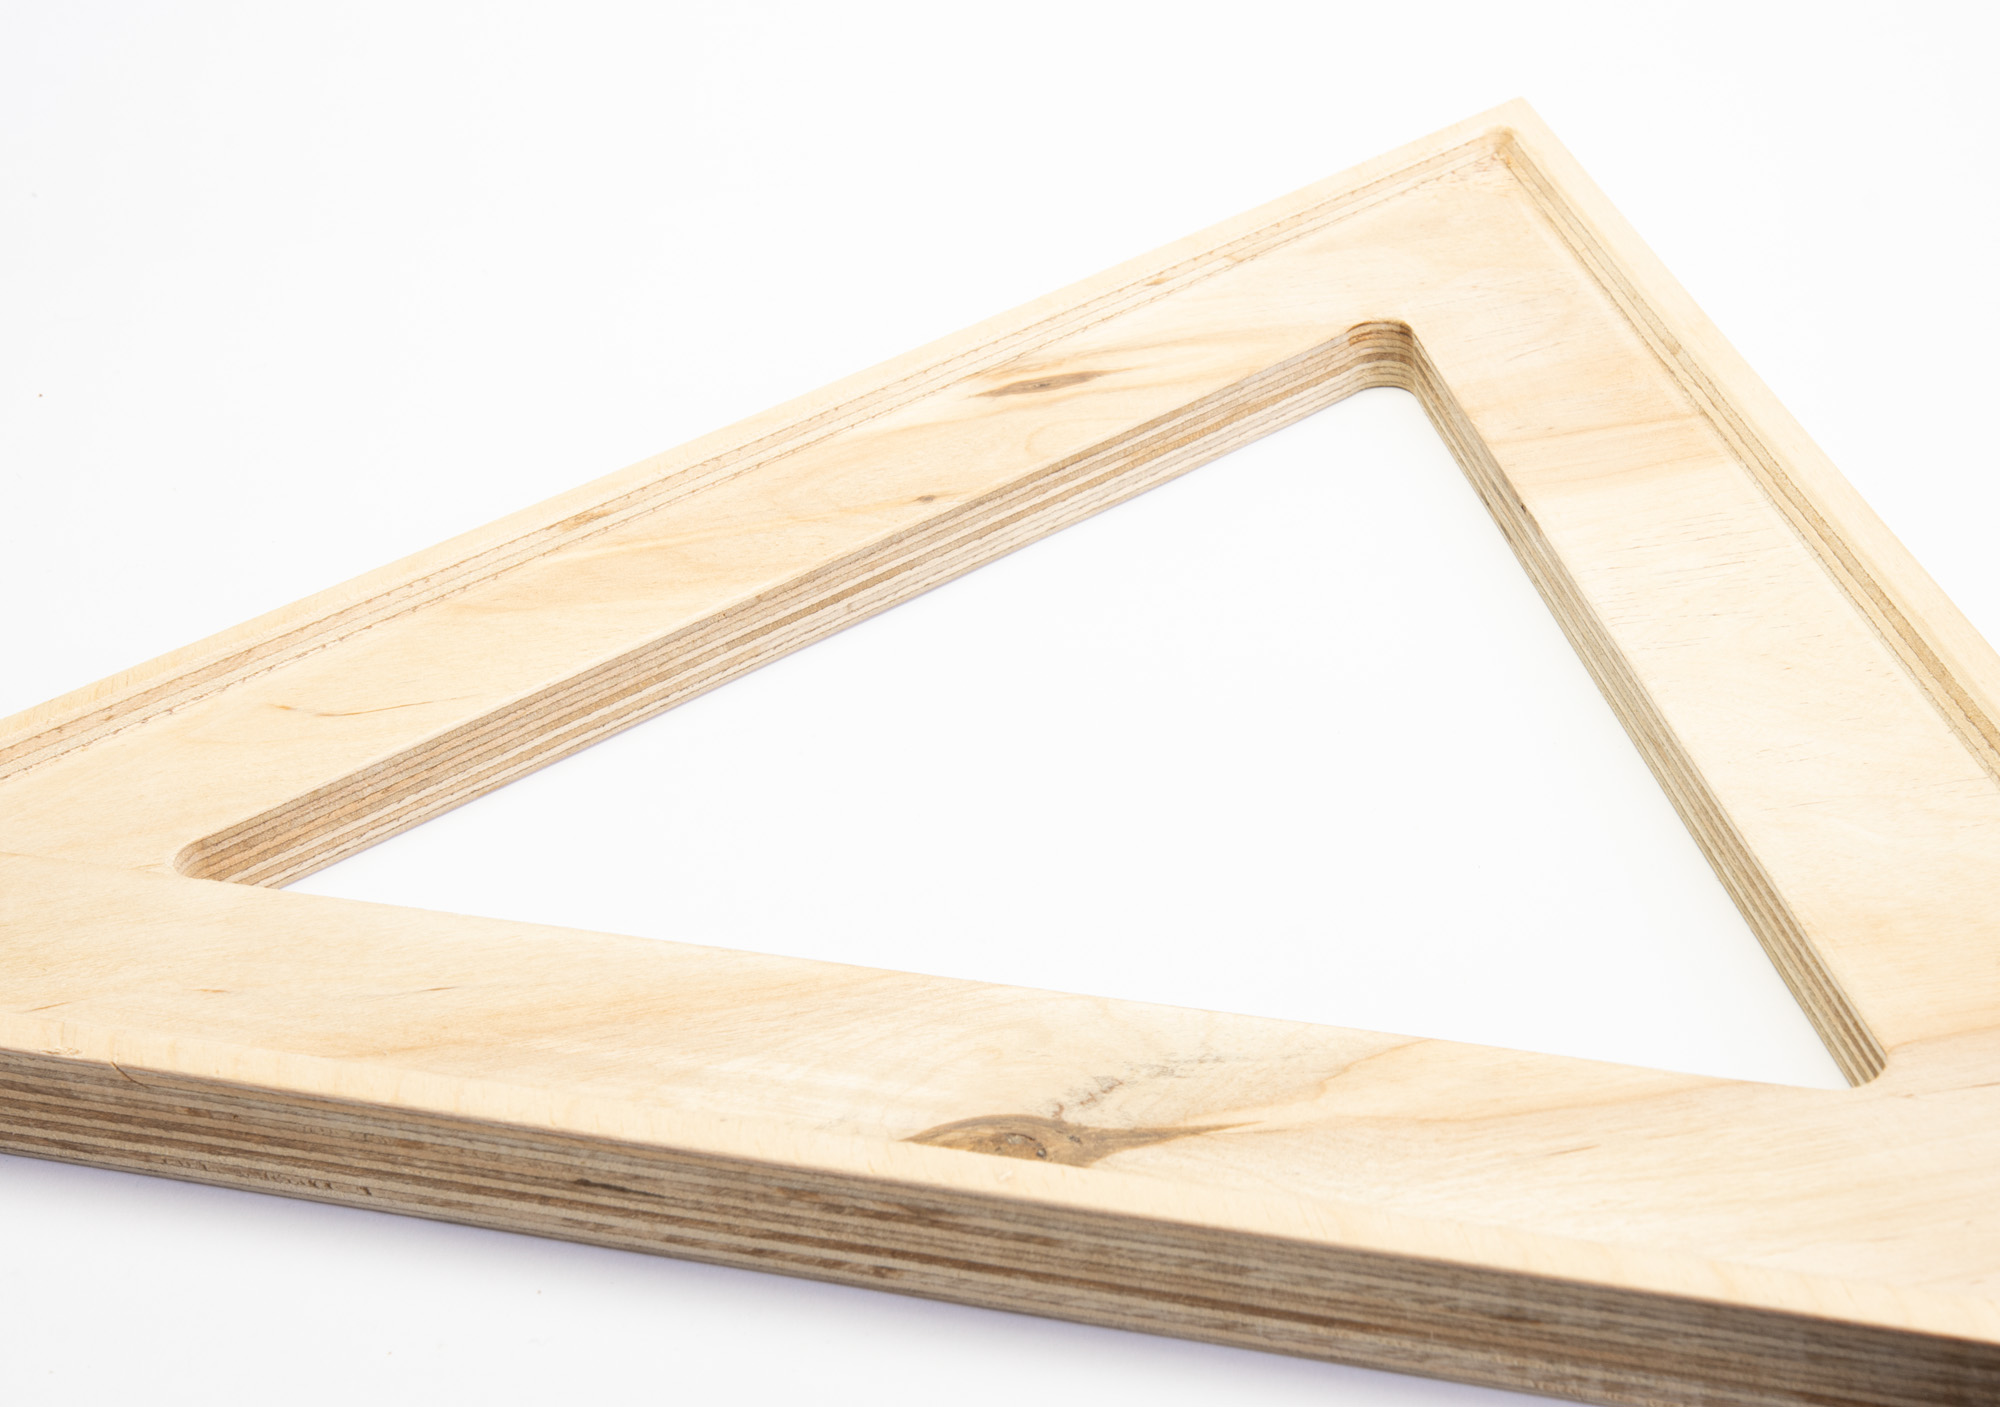 Dreieck unbespannt aus Holz